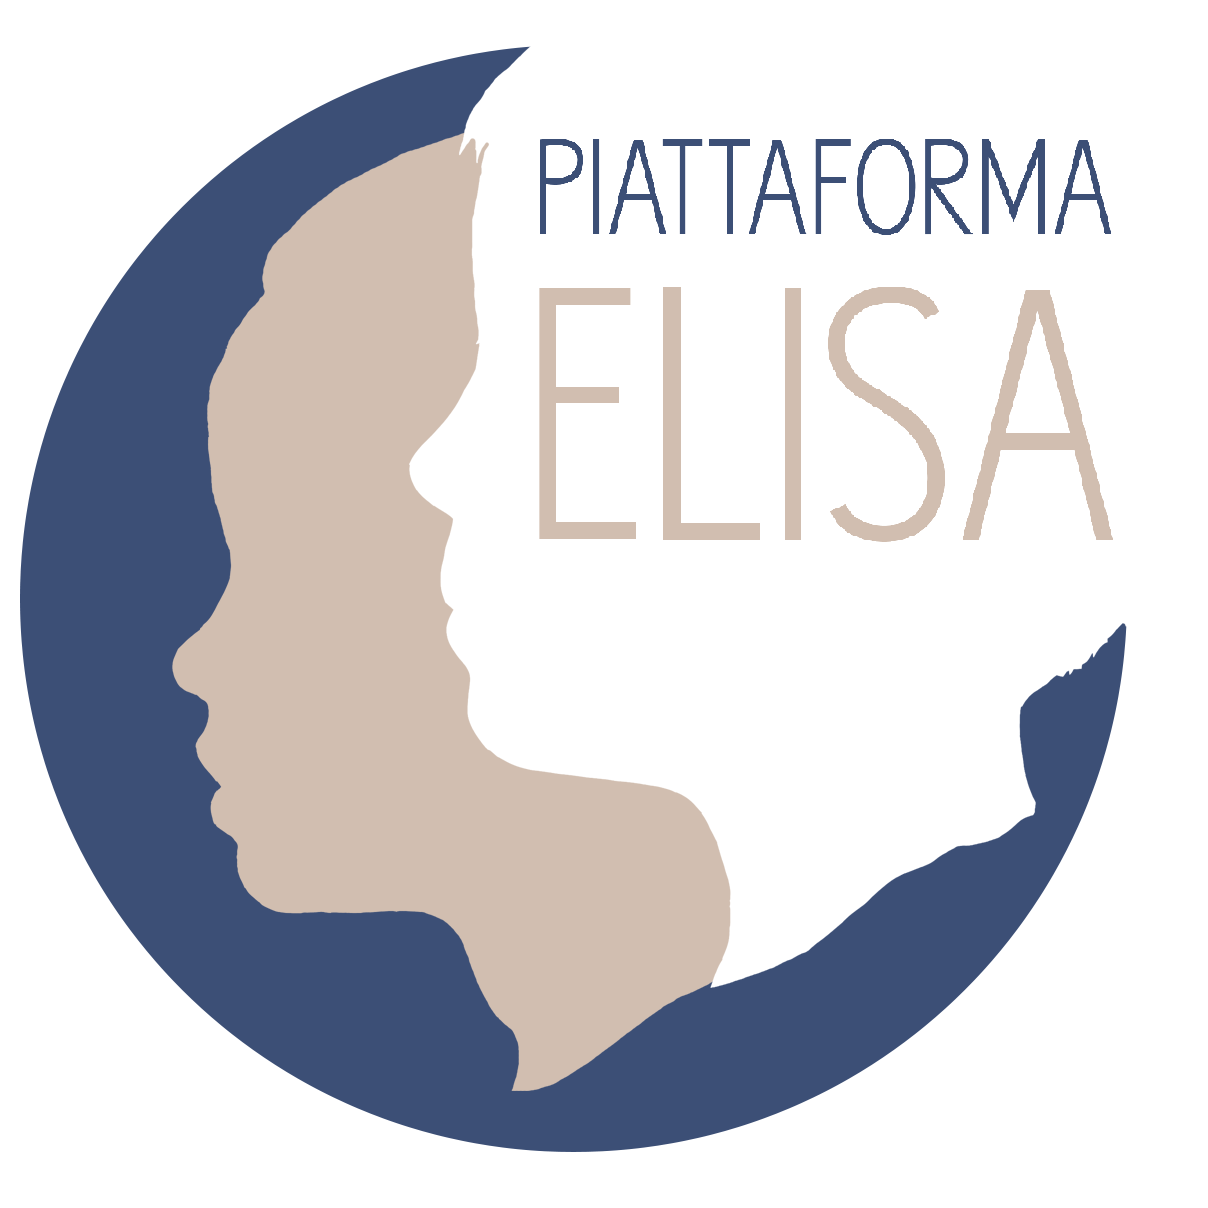 Piattaforma ELISA - Formazione in E-Learning degli Insegnanti sulle Strategie Antibullismo